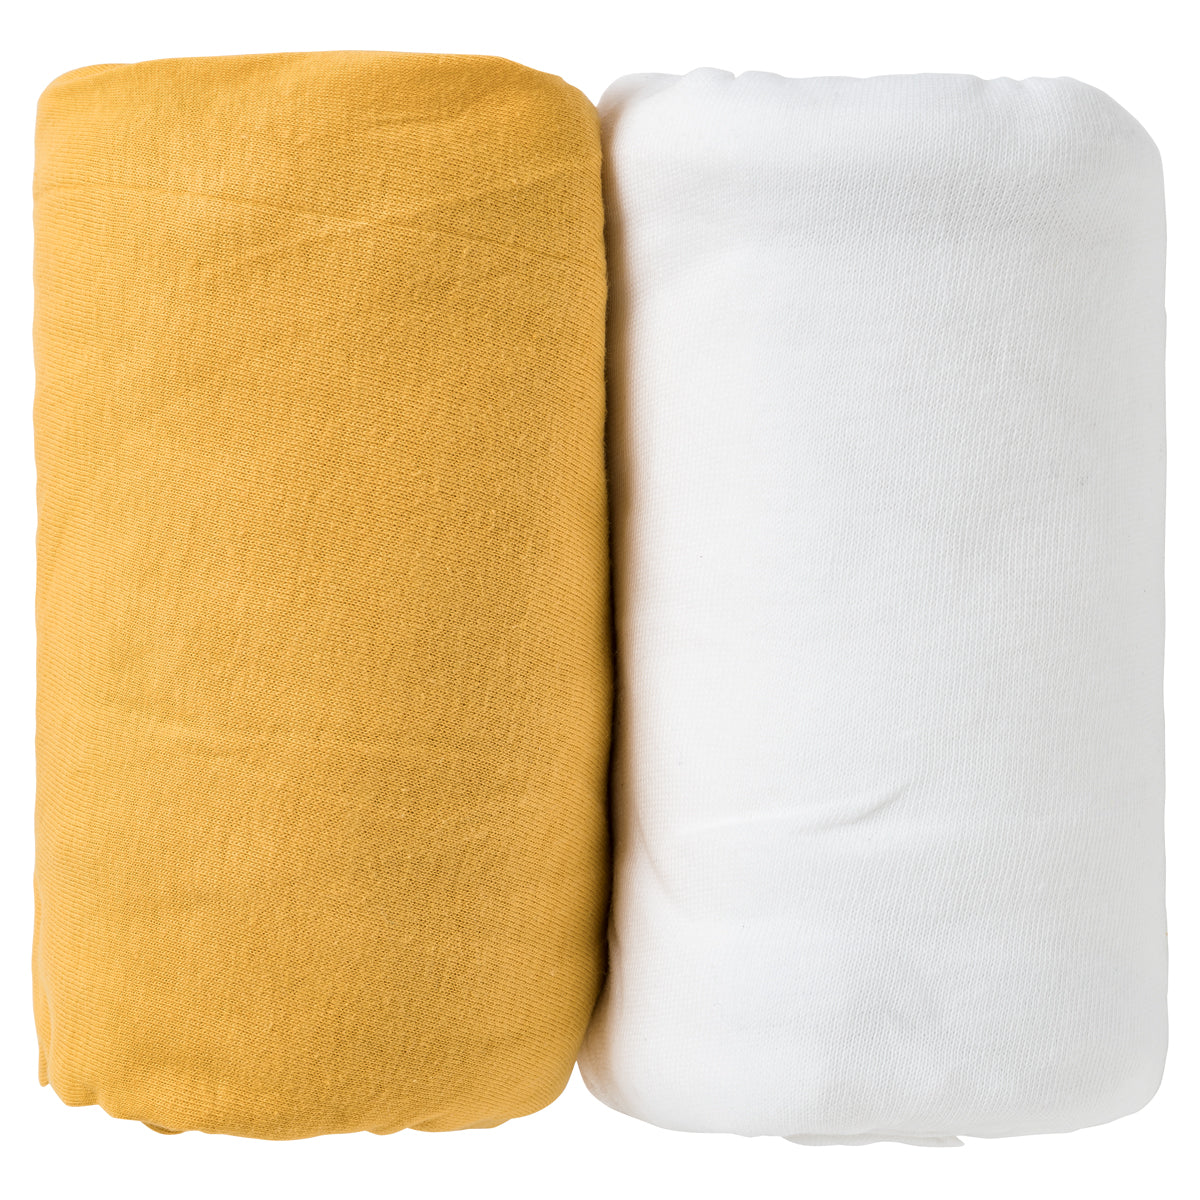 lot de 2 draps housse bébé en coton jaune et blanc 60x120cm